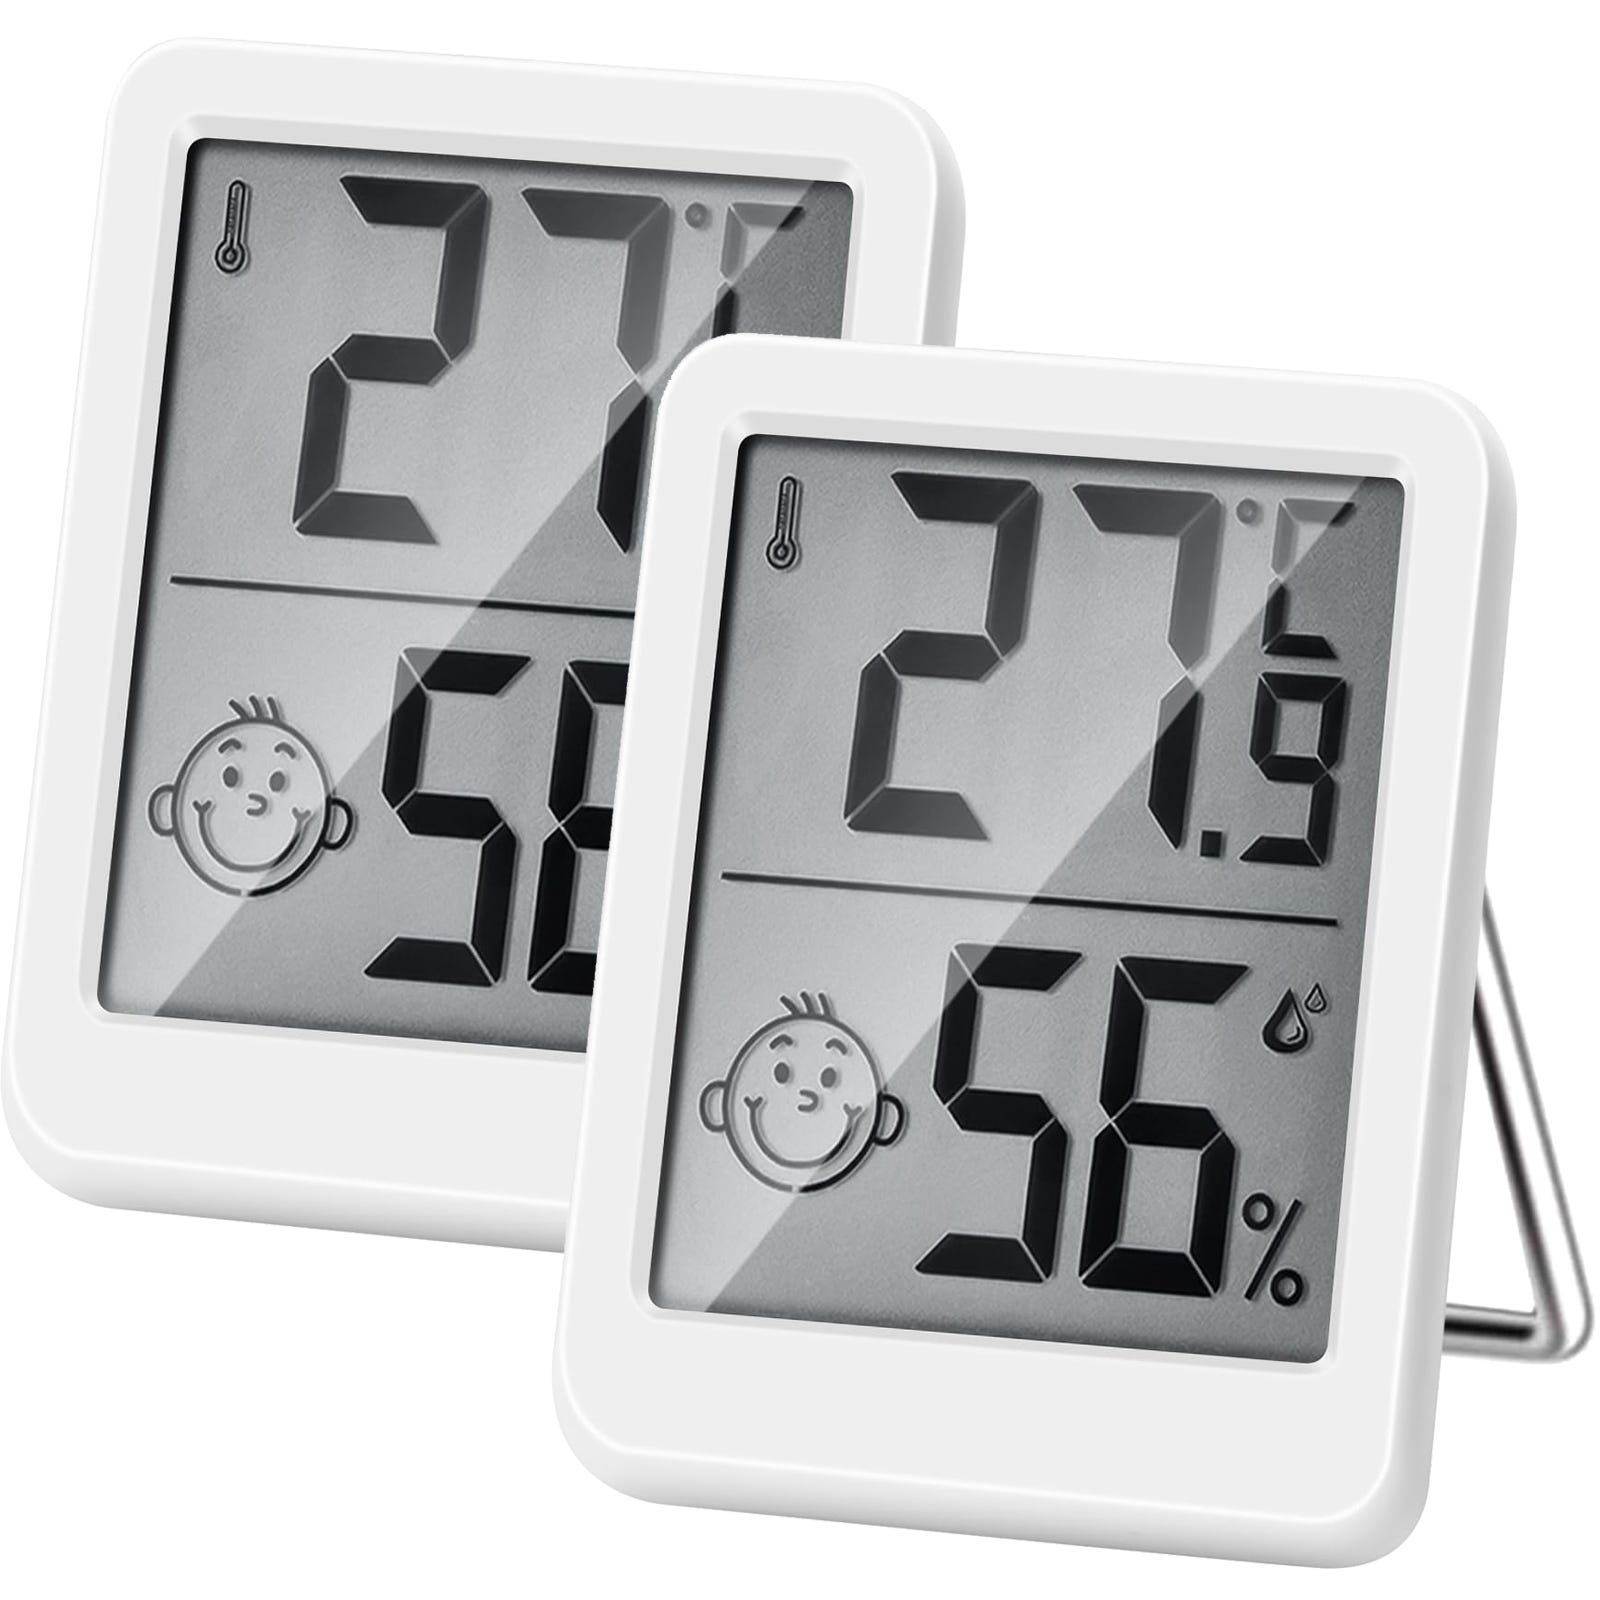 3 Thermomètre numérique Hygrometre Interieur Indicateur D'Humidité Avec  Grand éCran Et ThermomèTre Parfait Pour Surveiller Les Maisons